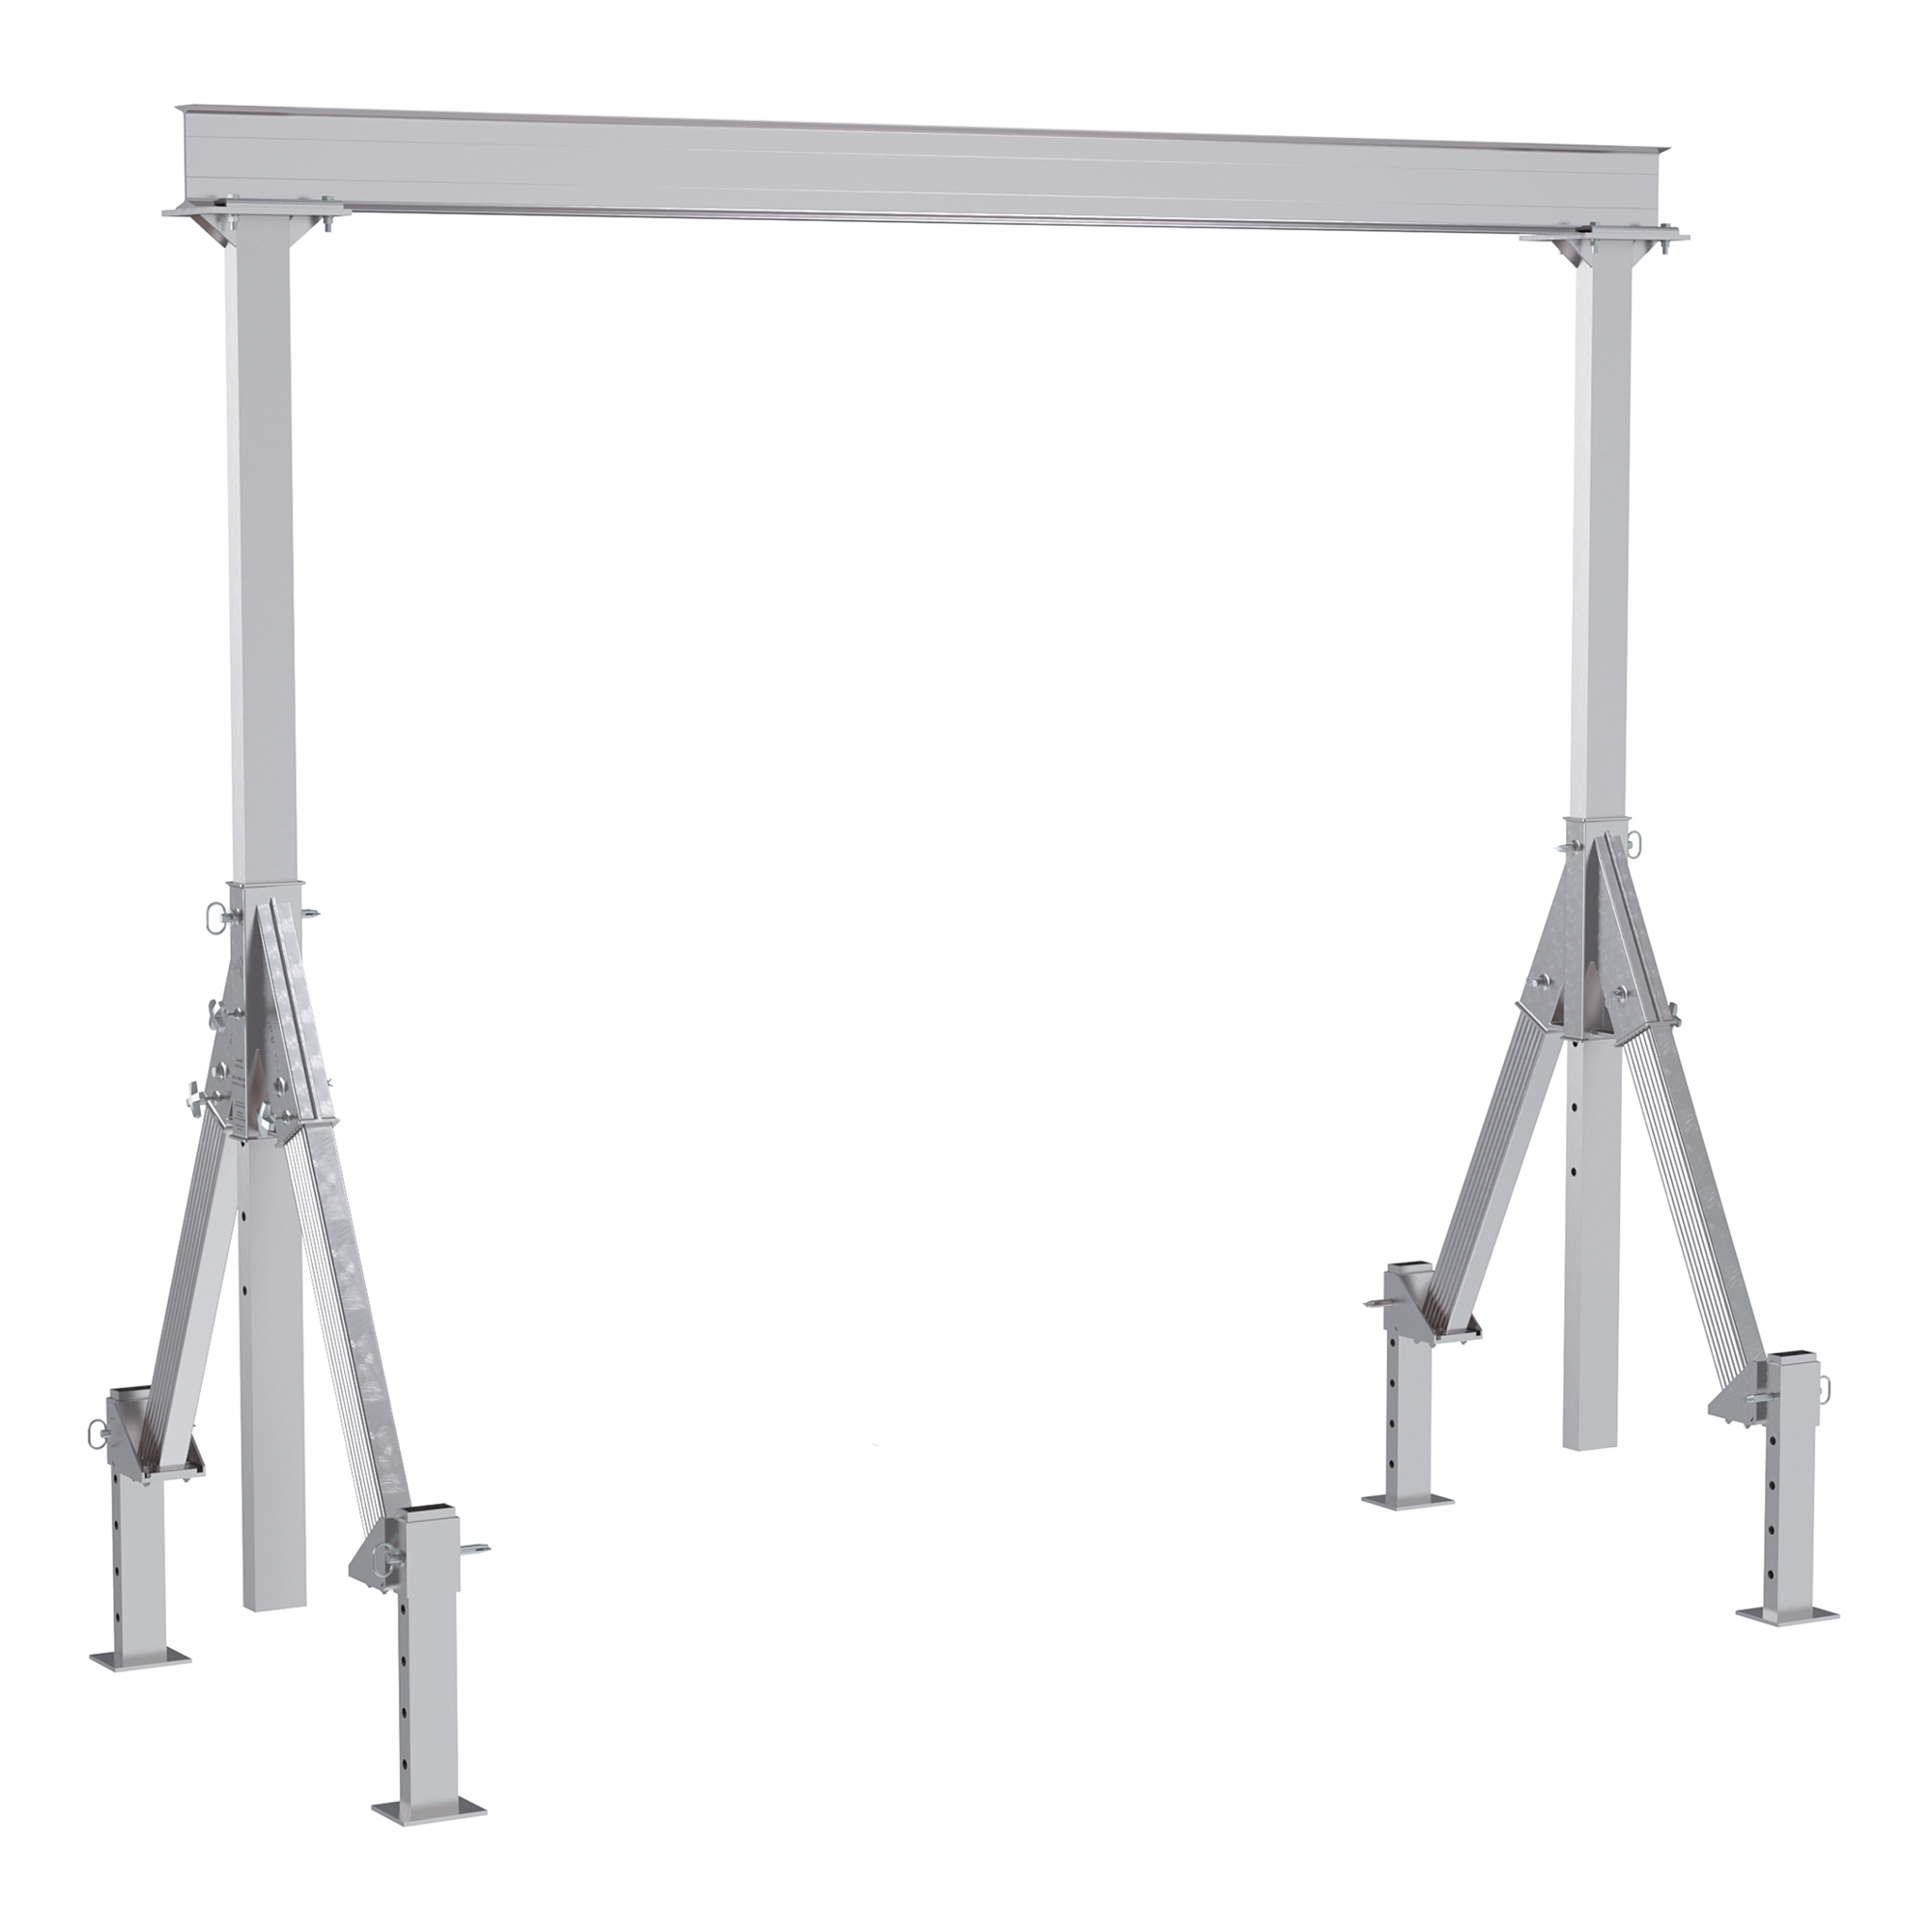 Vestil, Adjustable height aluminum crane 12ft. x 12ft., Load Capacity 4000 lb, Model AHA-4-12-12-ALO